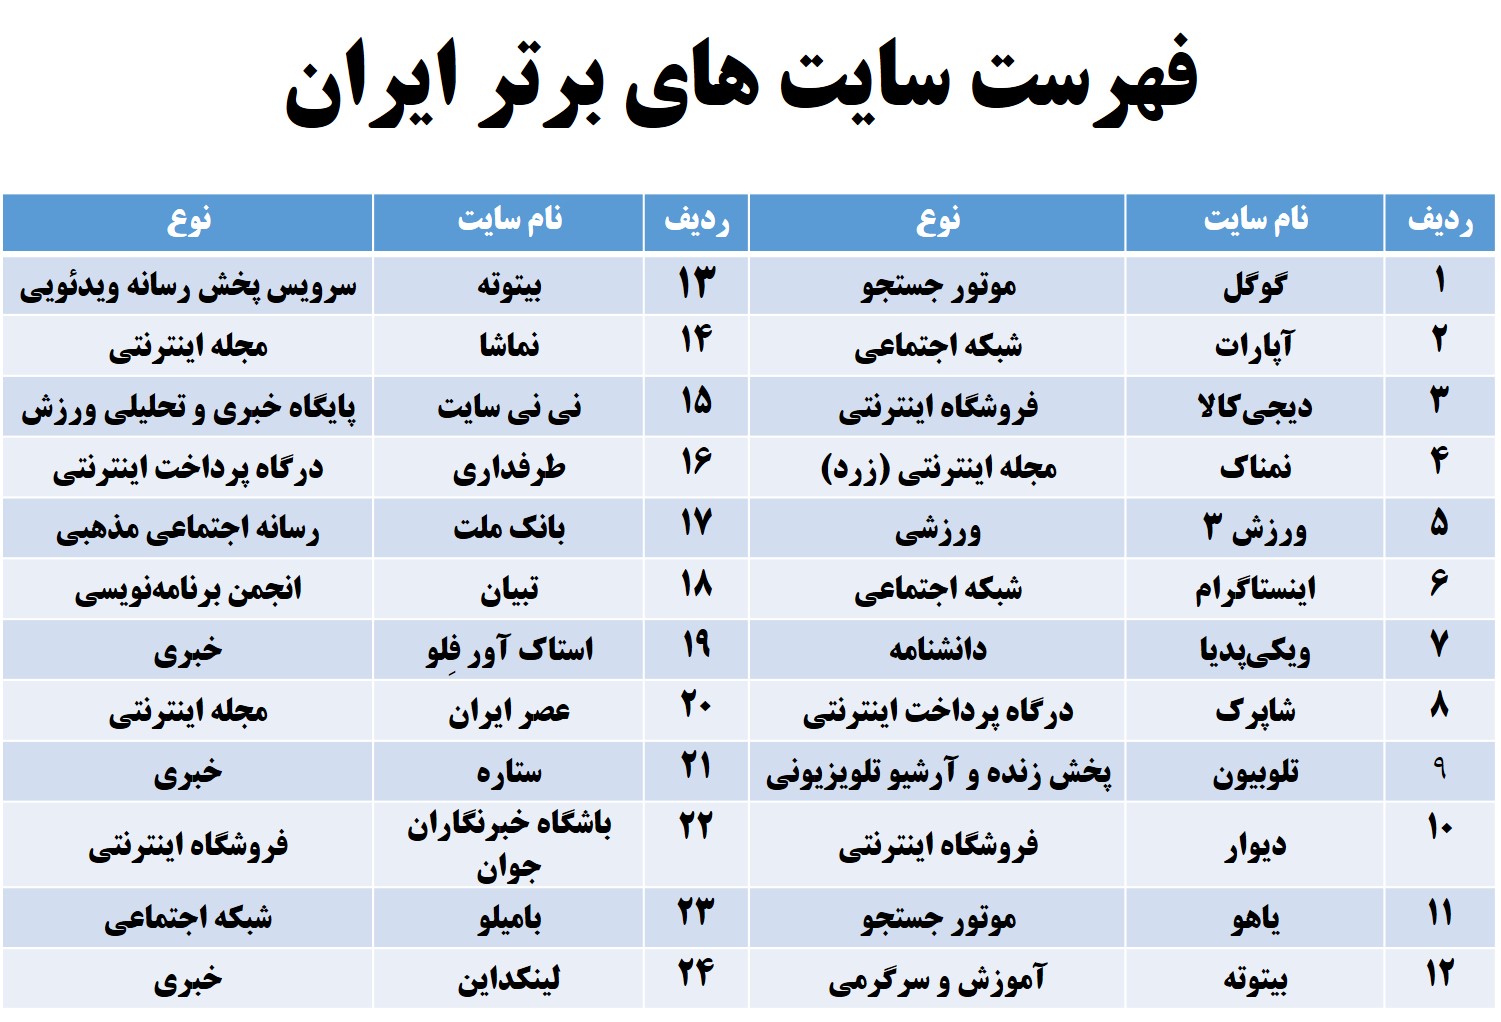 فهرست سایت های برتر ایران